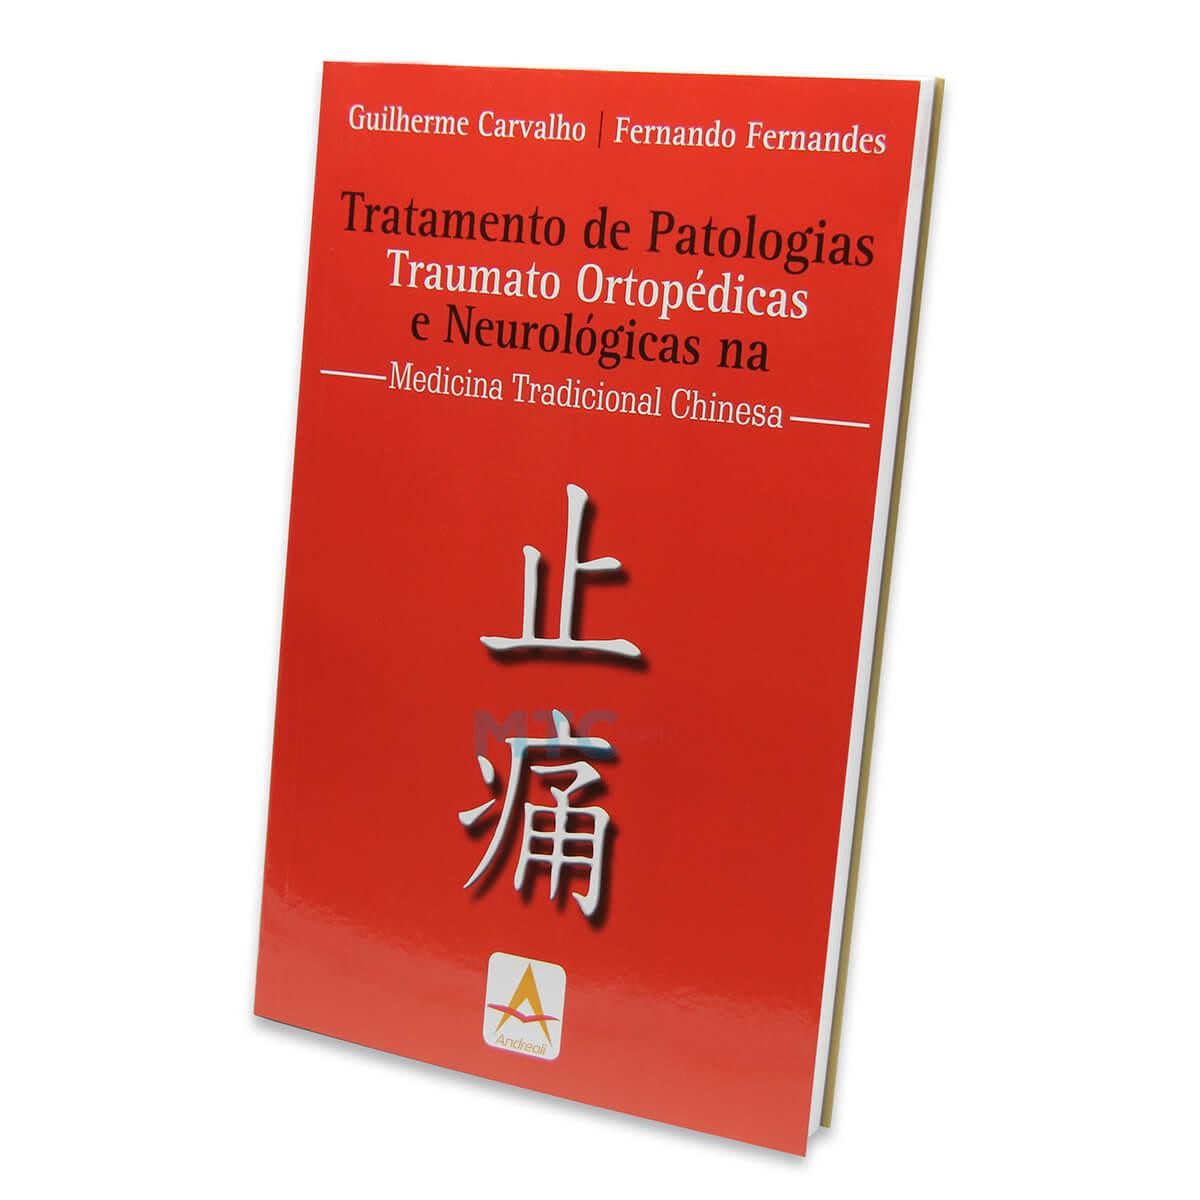 Tratamento de Patologias Traumato Ortopédicas e Neurológicas na Medicina Tradicional Chinesa - Ed. A